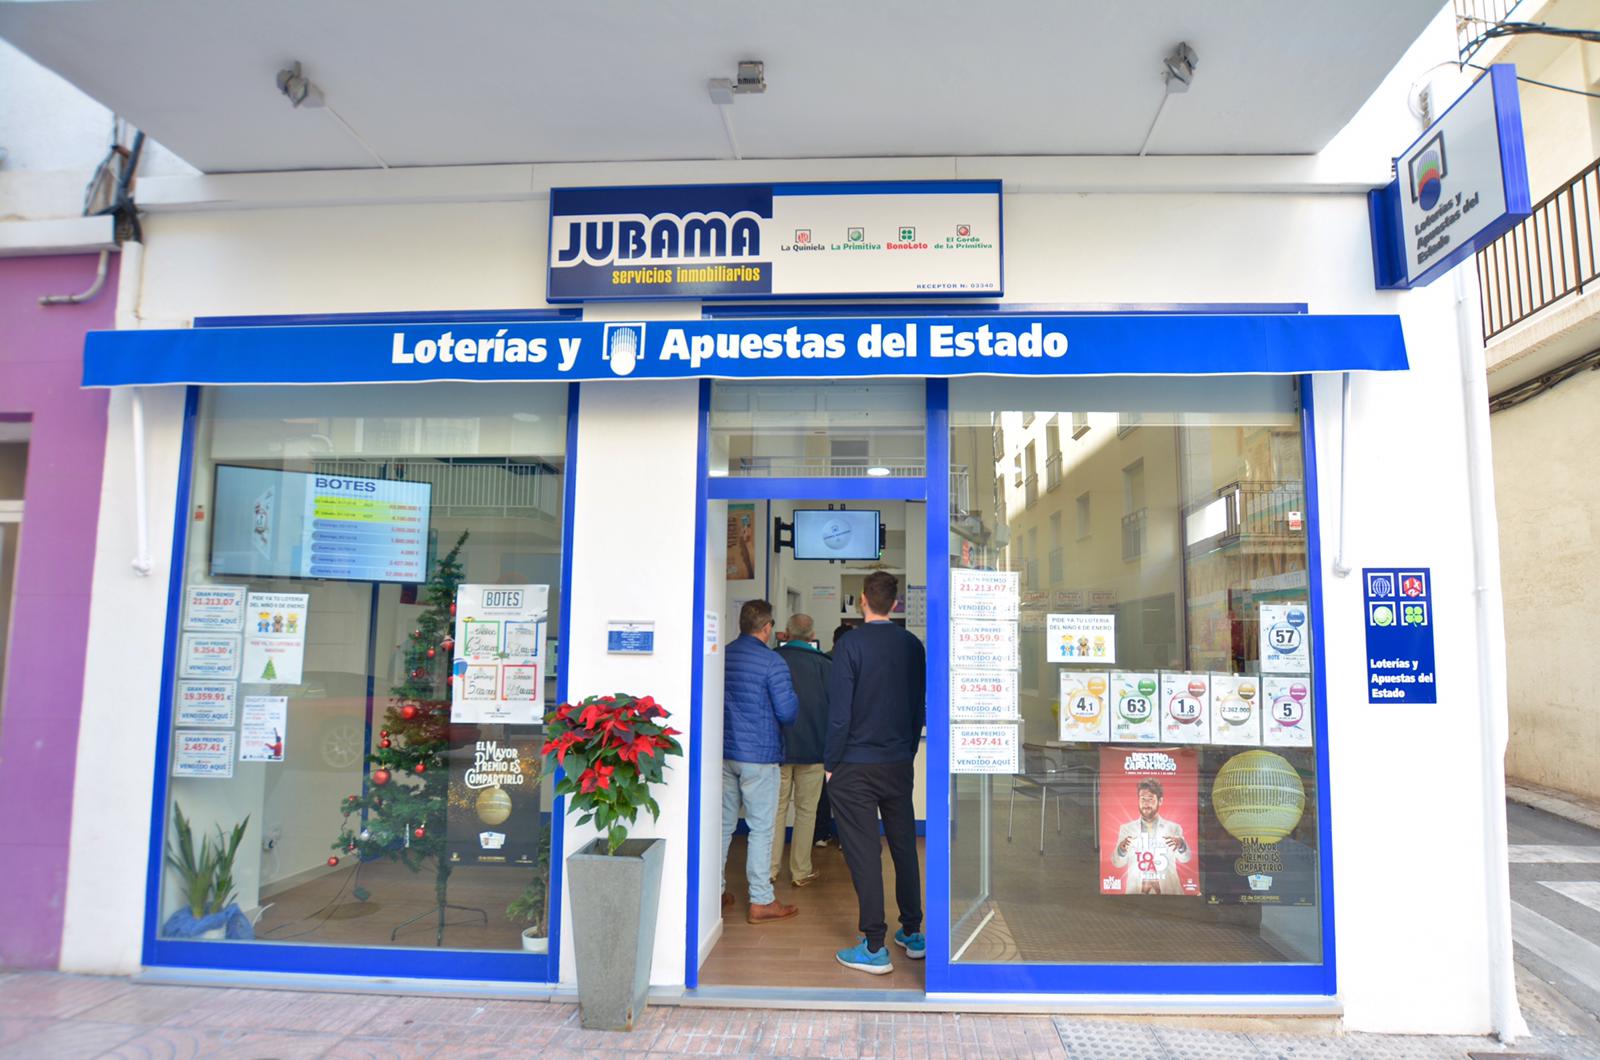 Adminstración de loterias Jubama